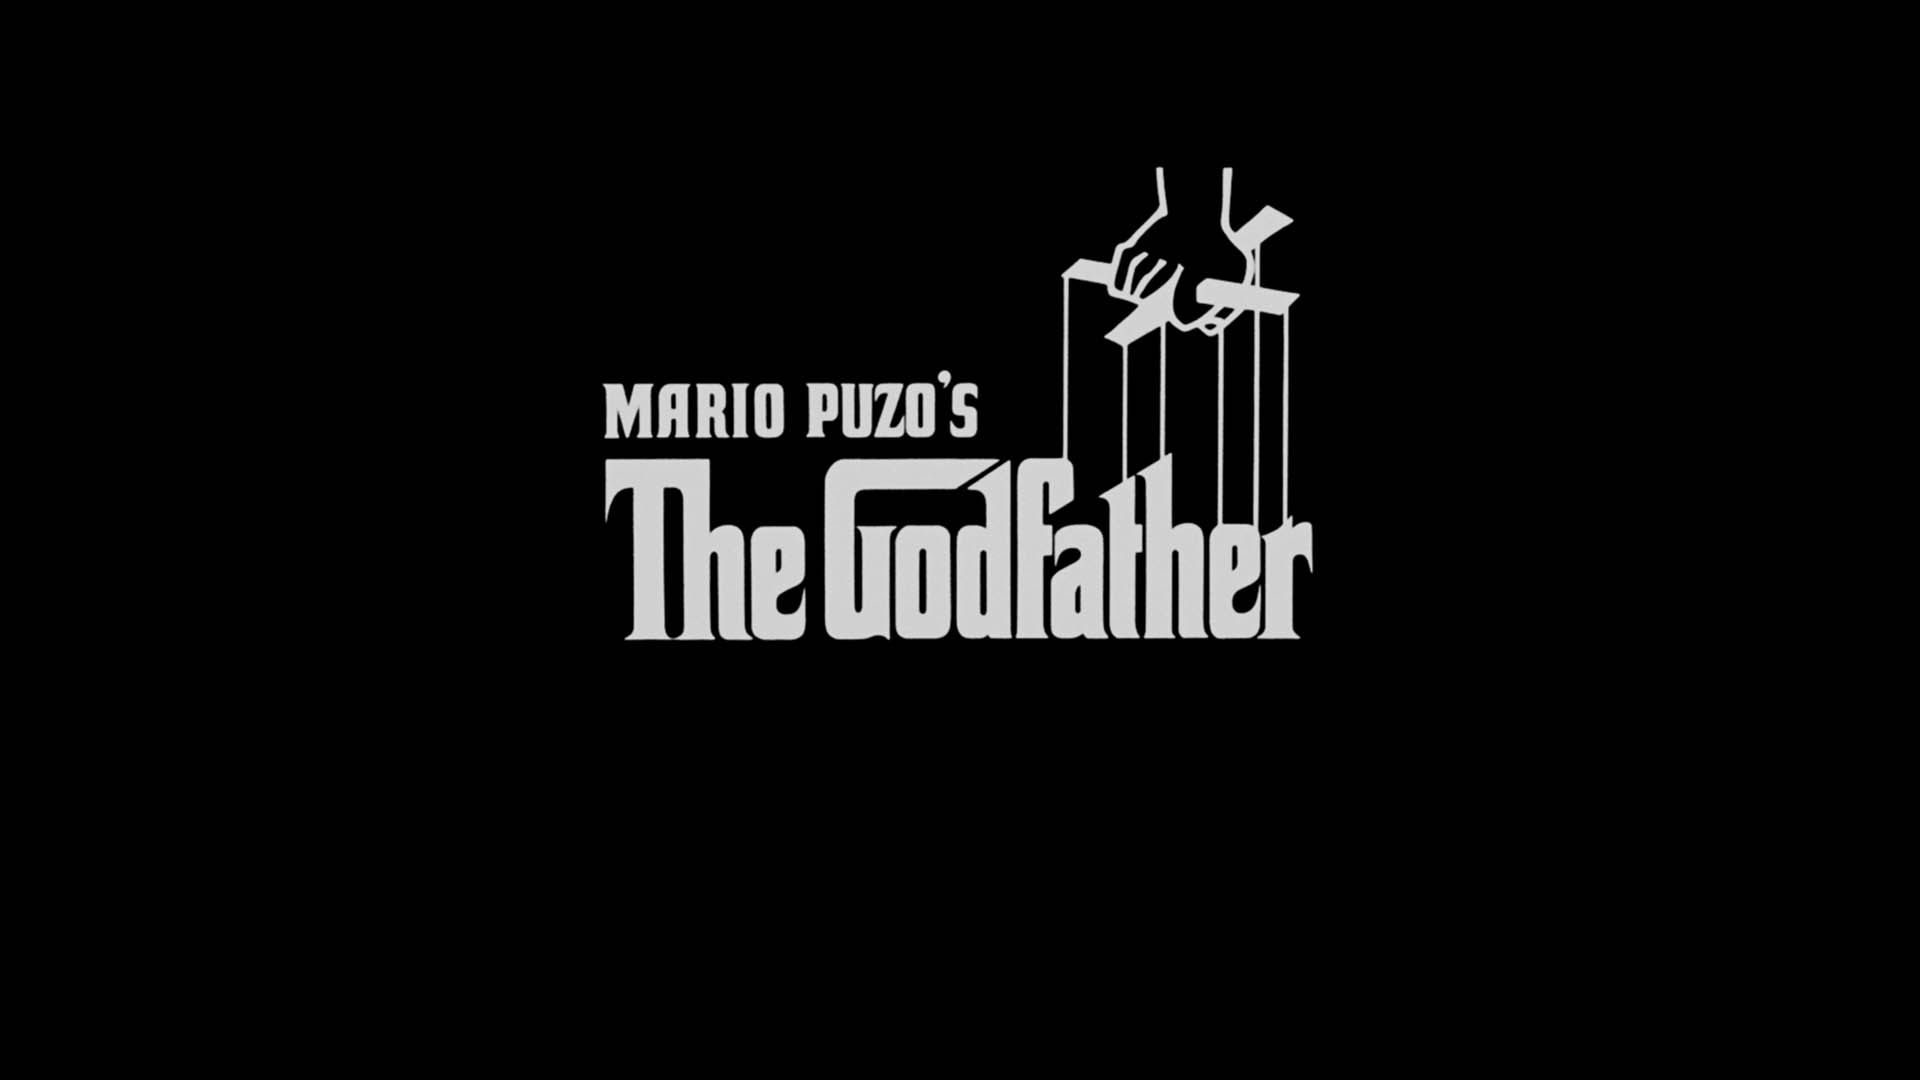 The Godfather opening logo